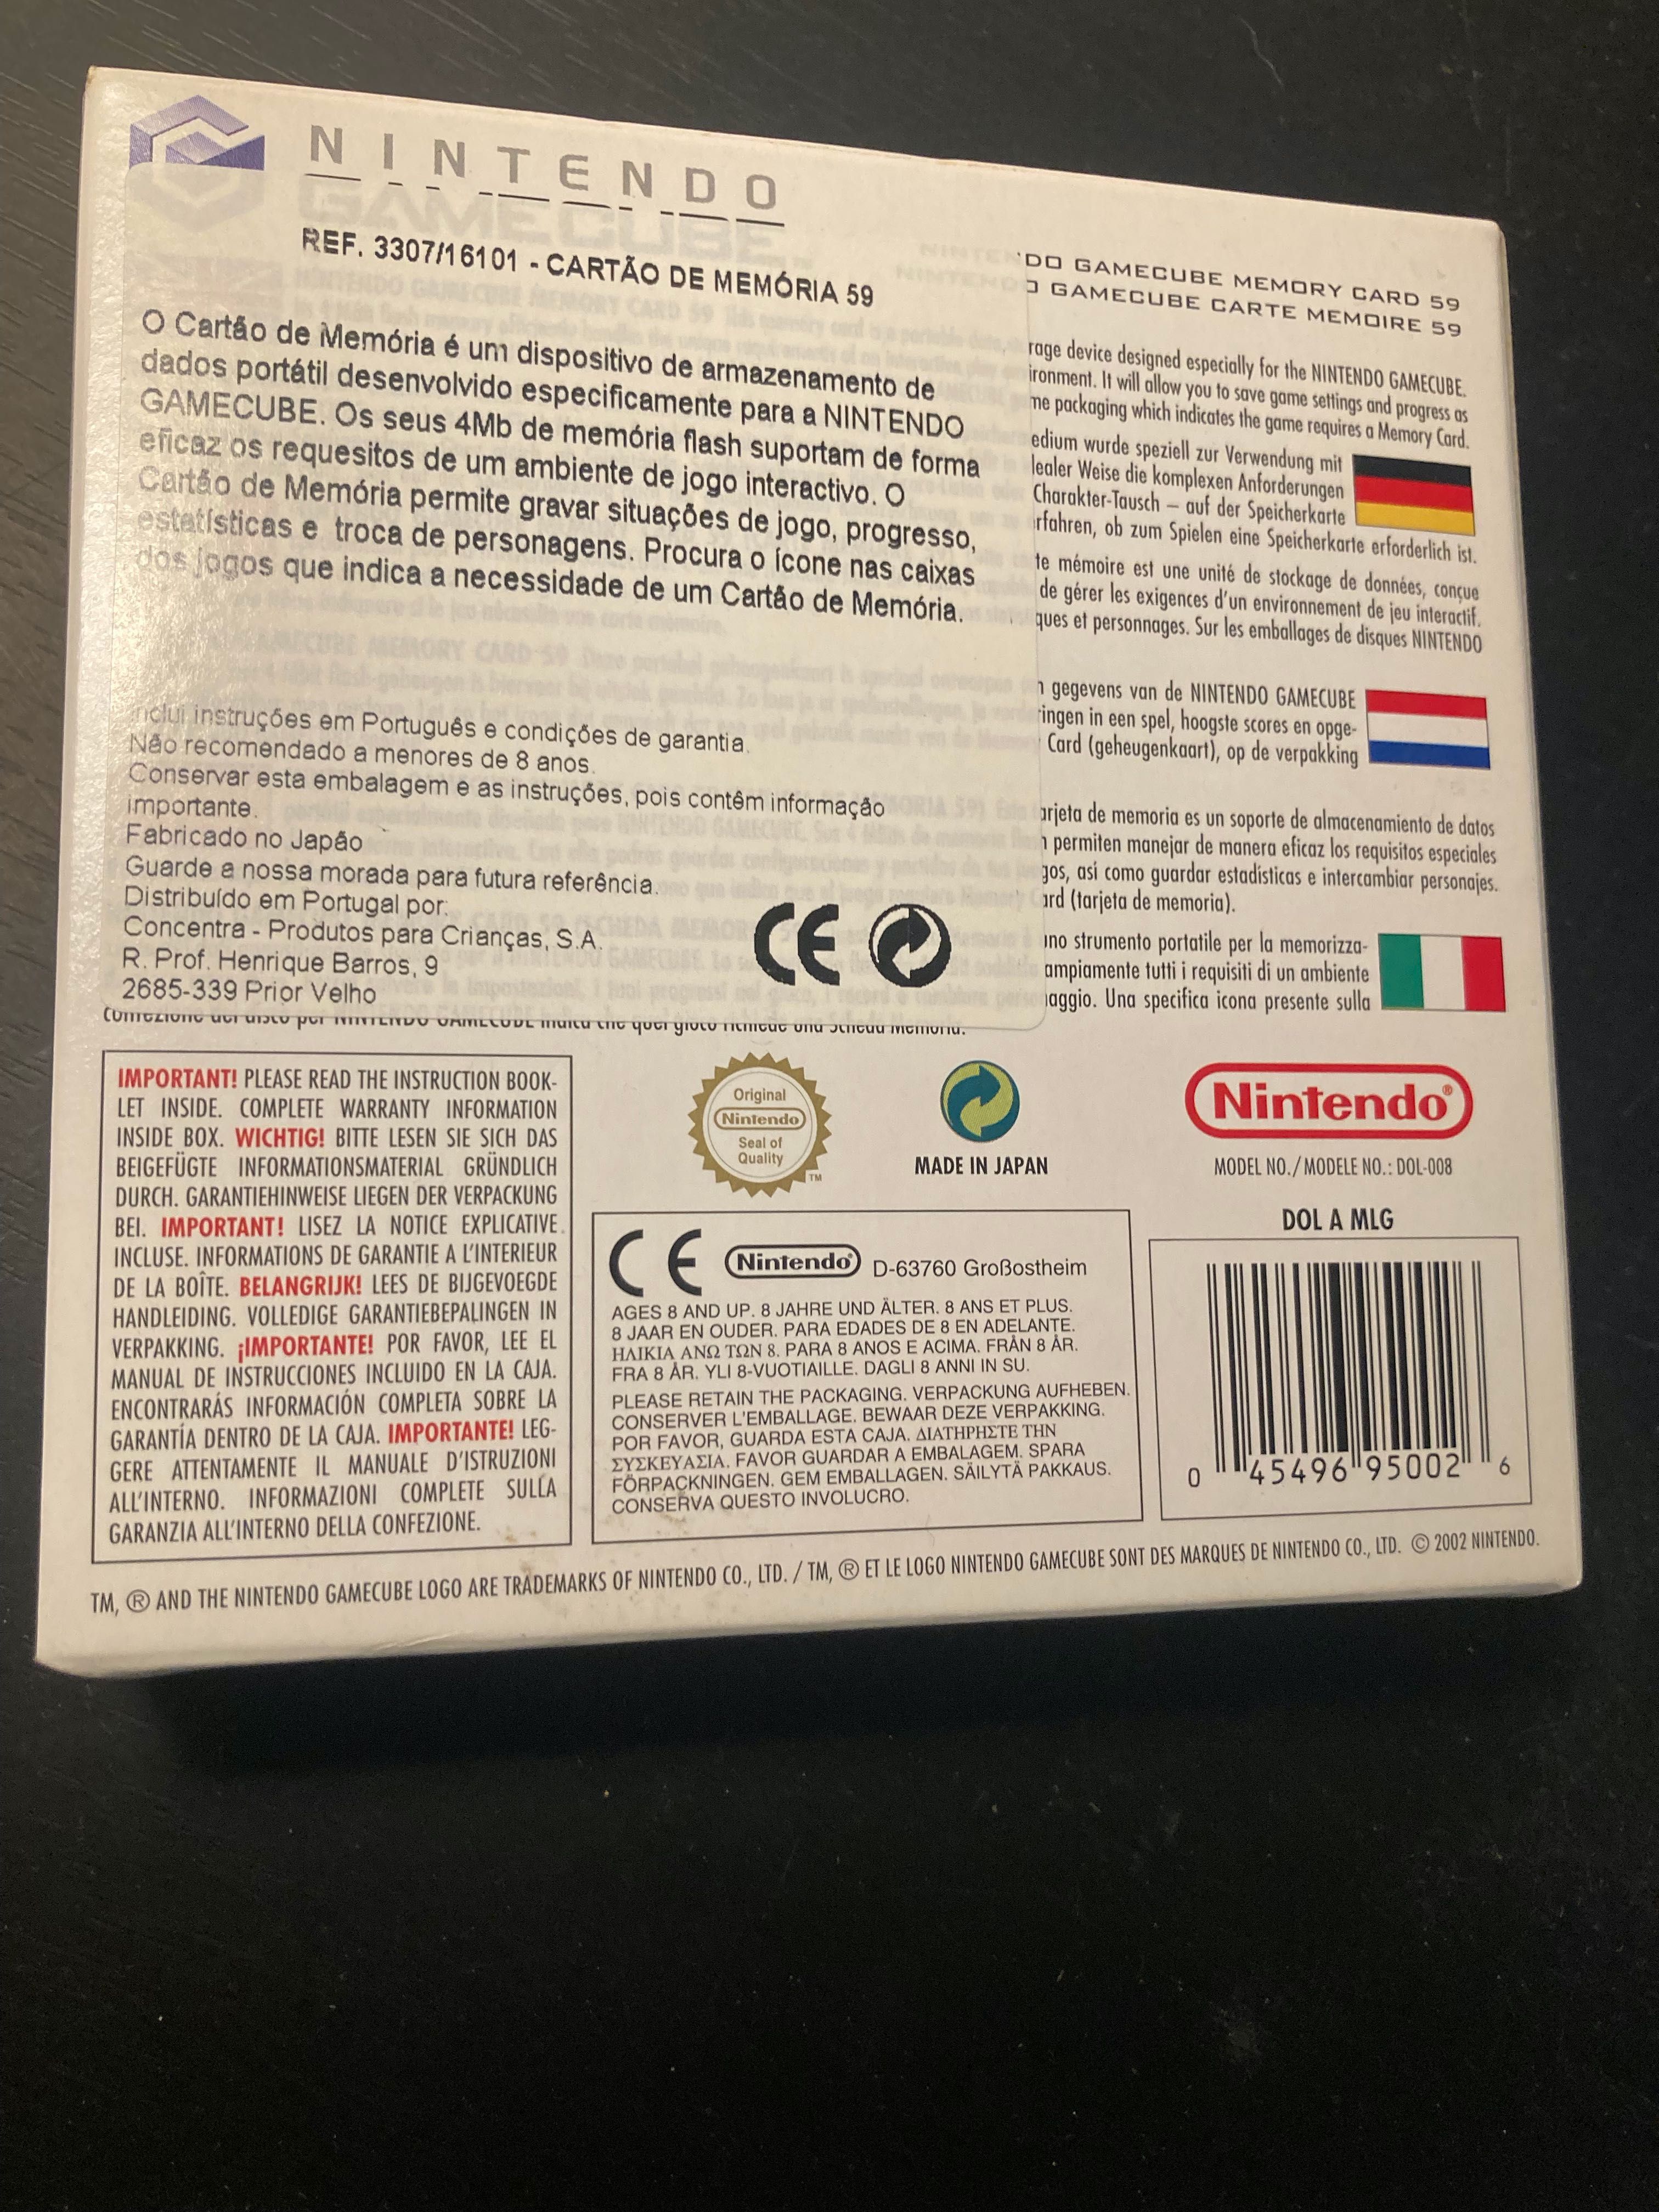 Cartão de memória Nintendo Gamecube Mermory card